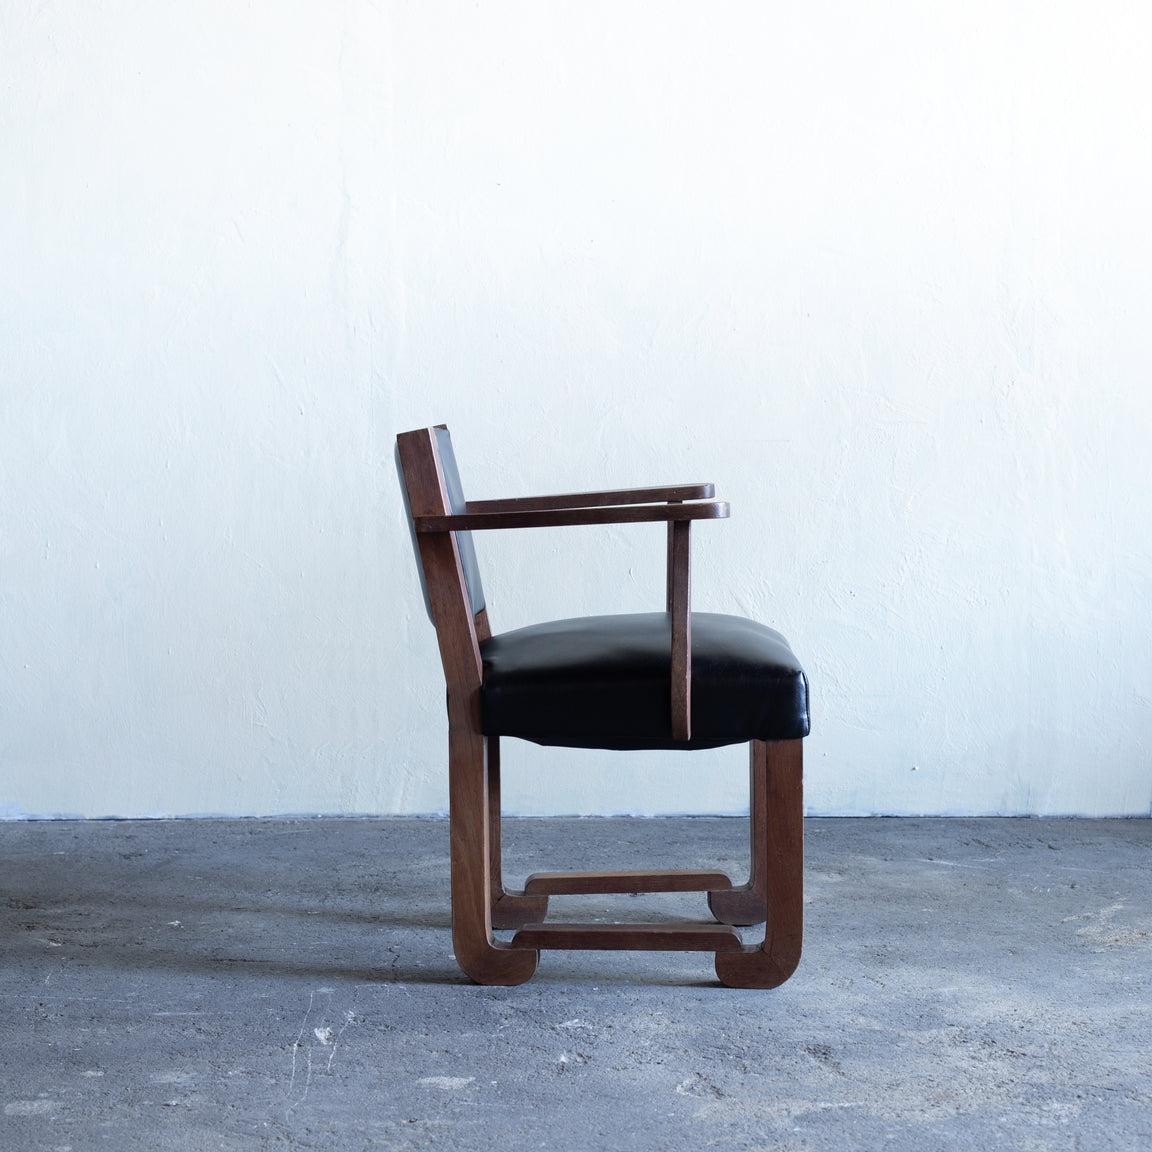 Skulpturaler Art Déco-Stuhl mit Armlehne, entworfen von dem französischen Designer Francisque Chaleyssin.
Struktur aus massivem Ruderholz, Sitz und Rückenlehne sind mit schwarzem Leder gepolstert.